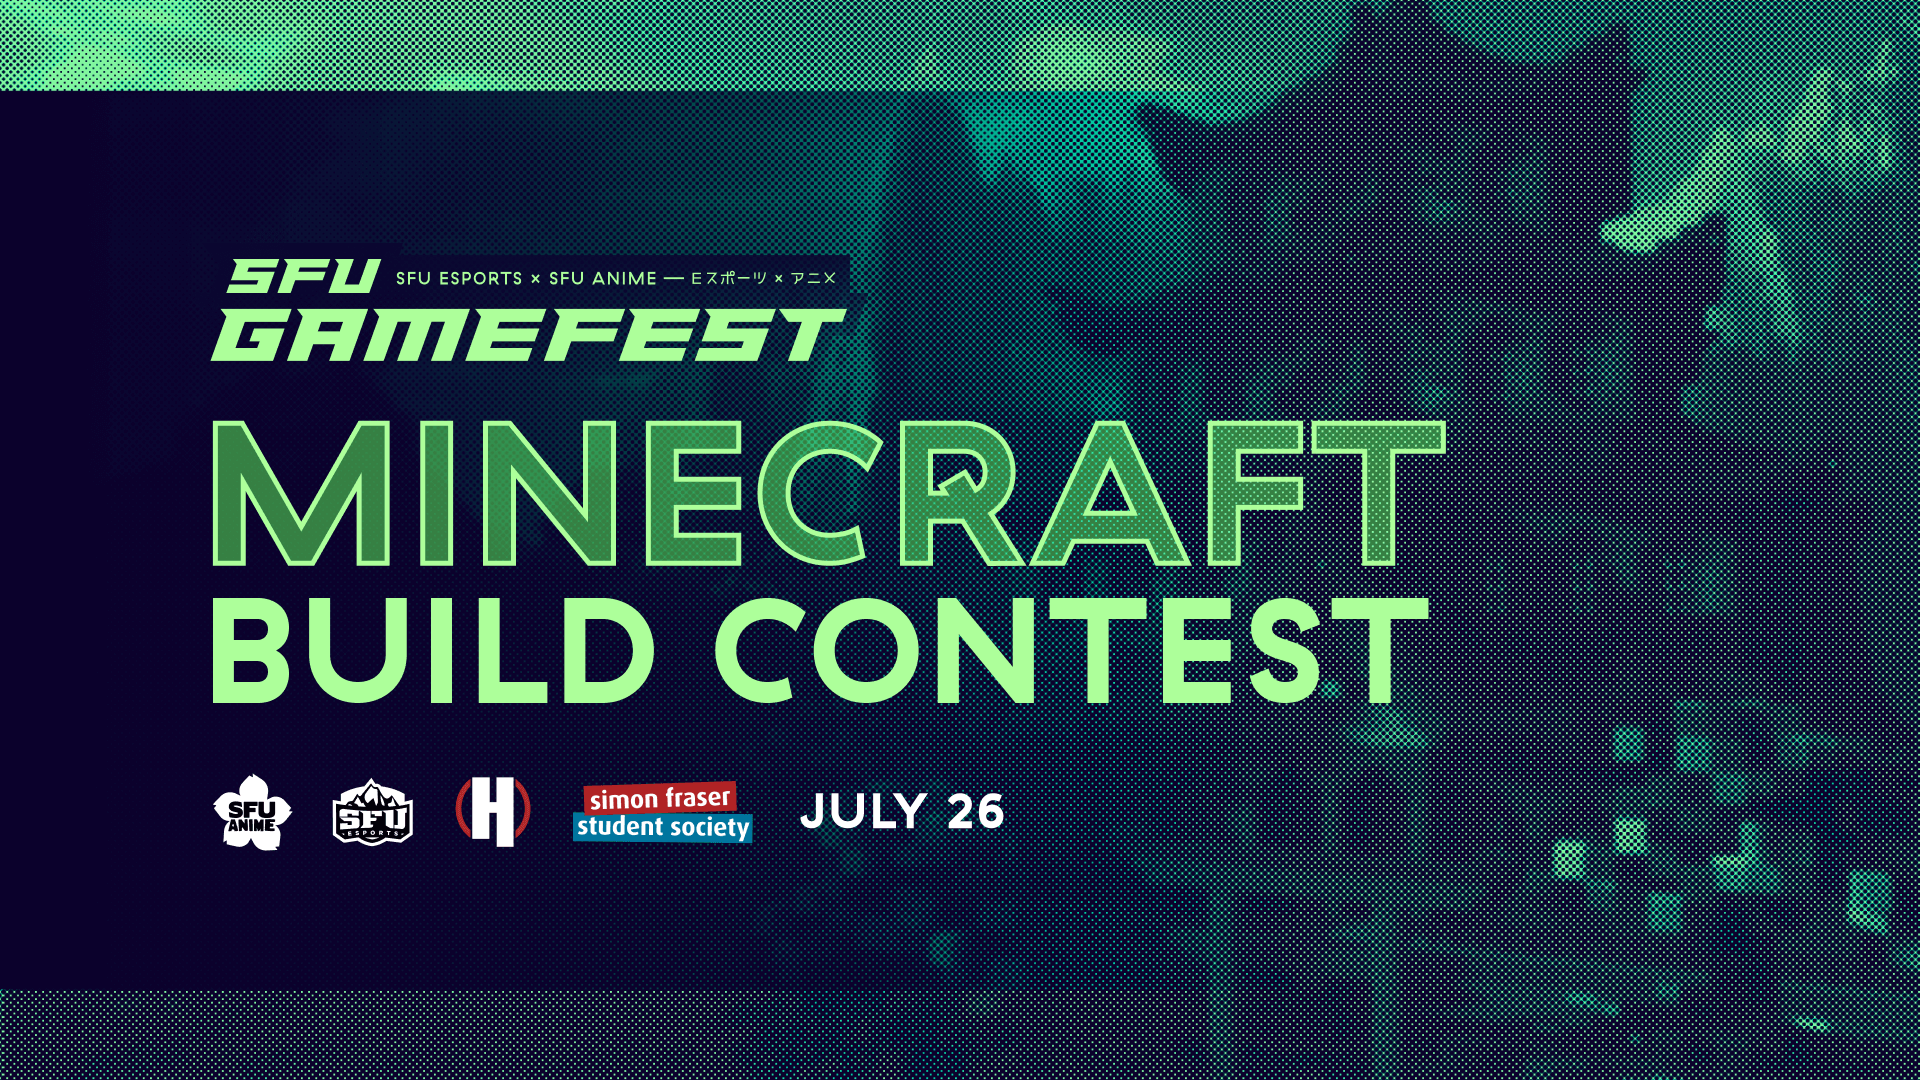 SFU Gamefest 2020 - Minecraft Build